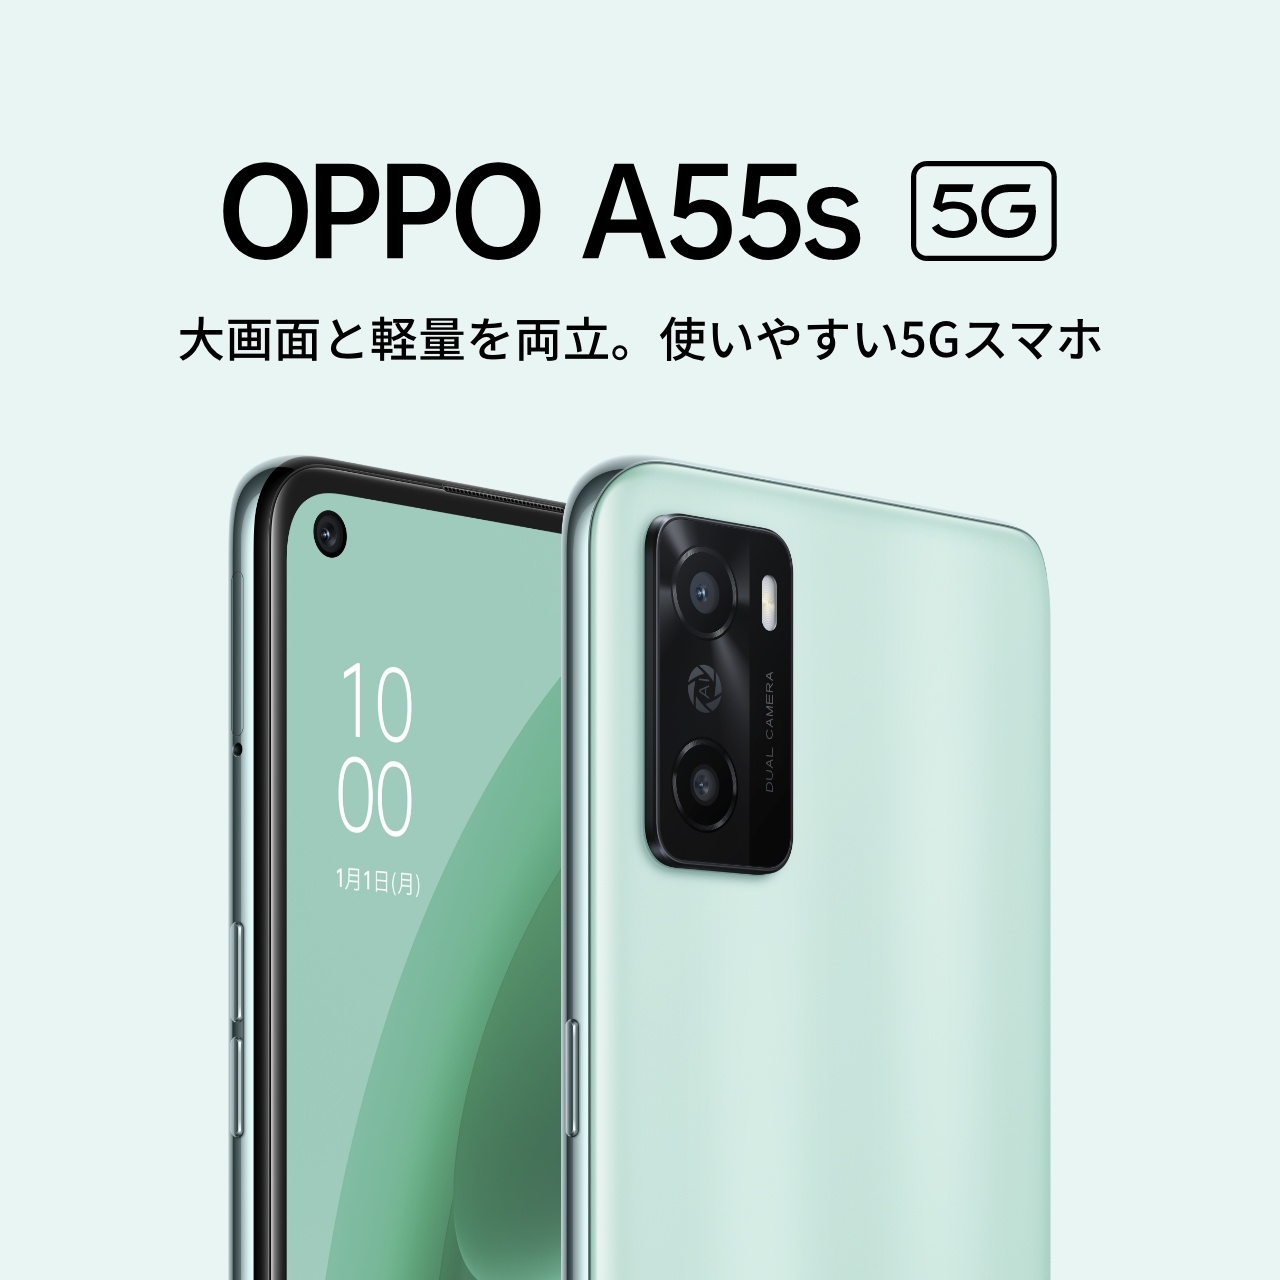 OPPO A55s 5G【SIMFREE】 | スマートフォン | OPPO公式